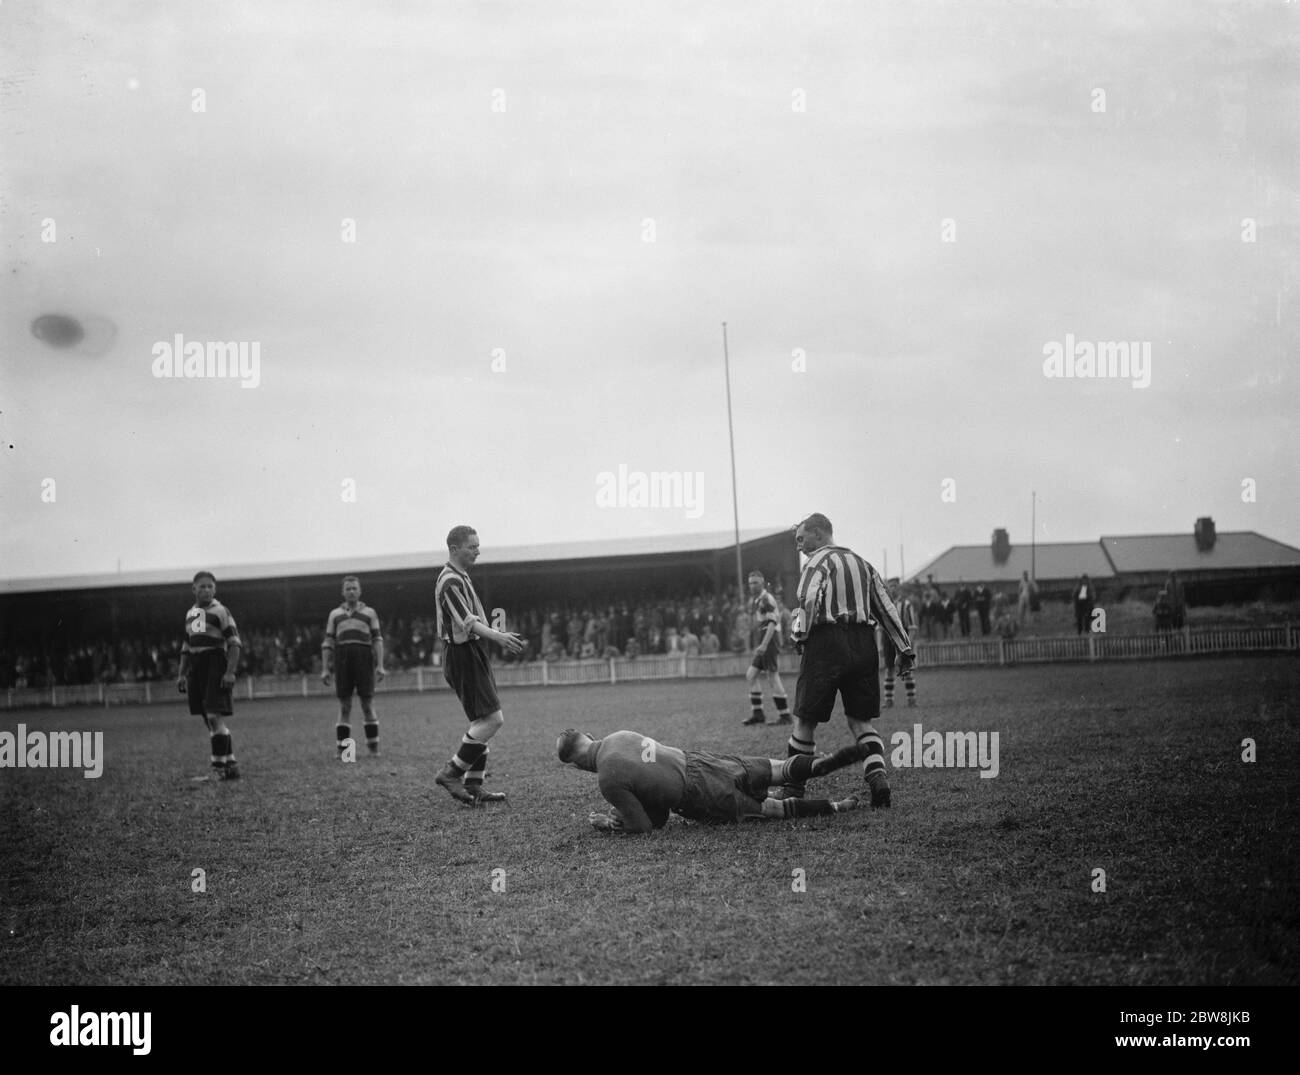 Dartford - Trial Match - Rouge et blanc v Noir et blanc - 21/08/37 1937 Banque D'Images